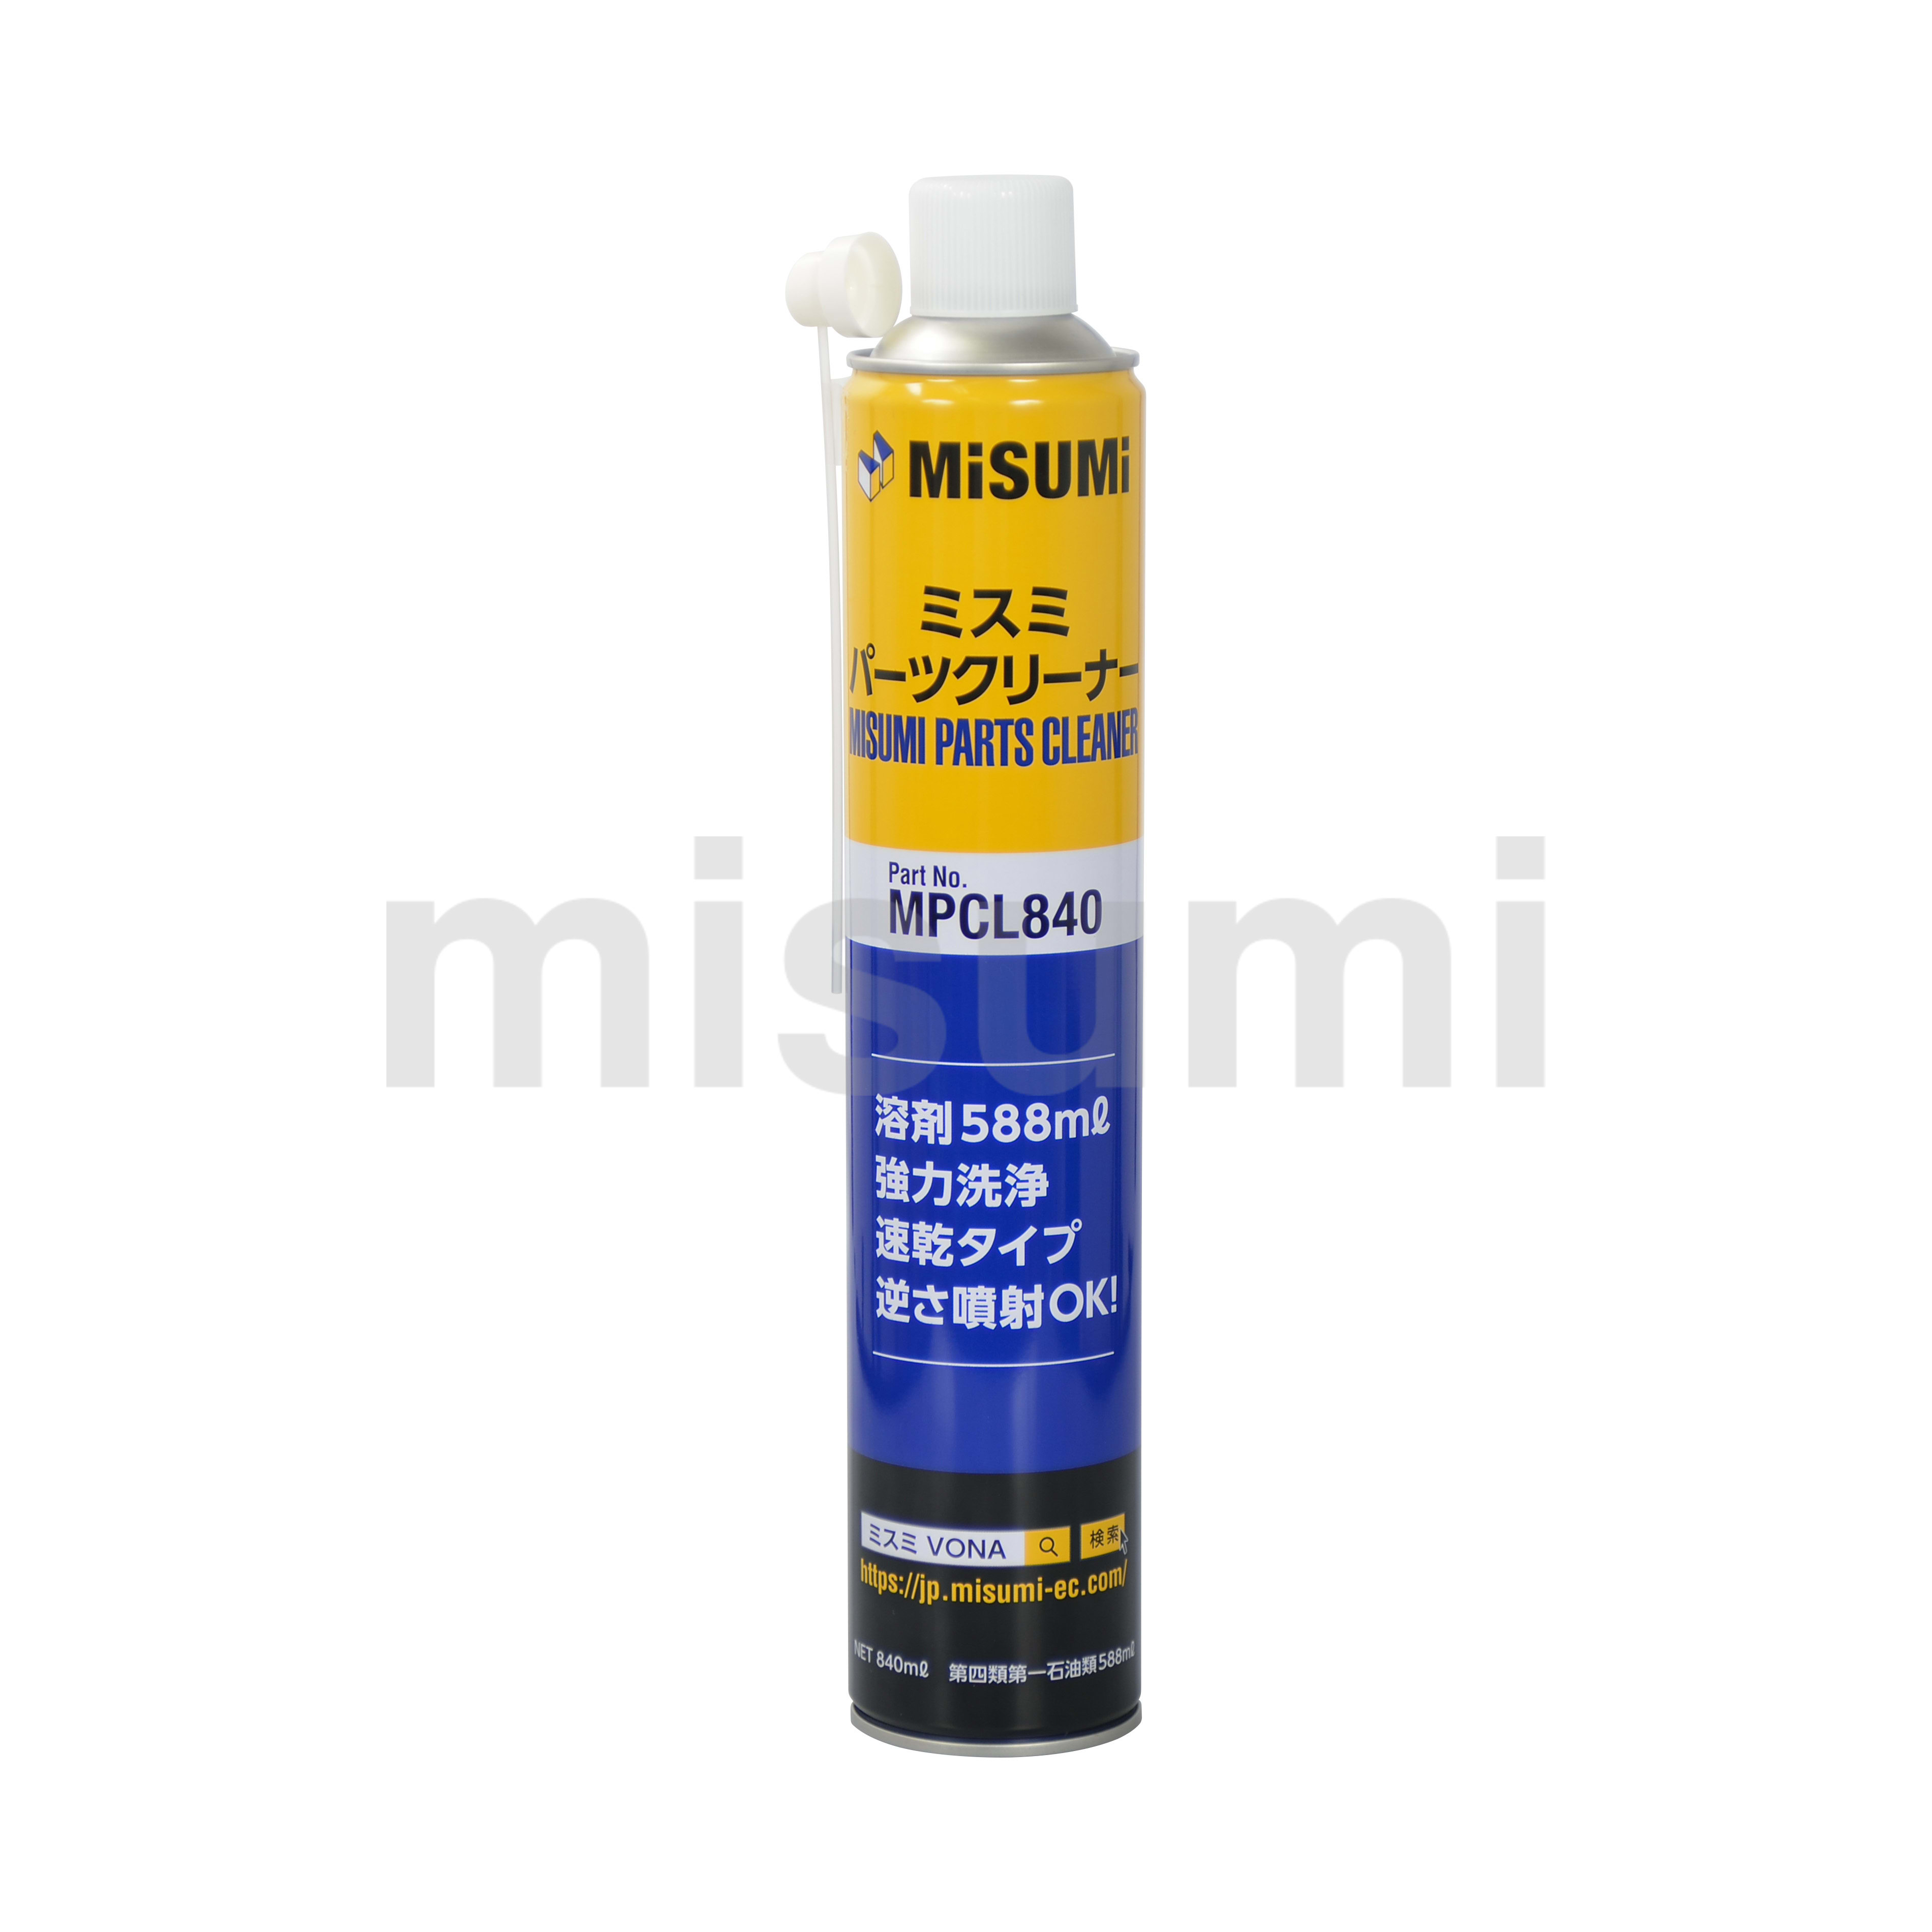 ミスミ パーツクリーナー MPCL840 | ミスミ | MISUMI(ミスミ)